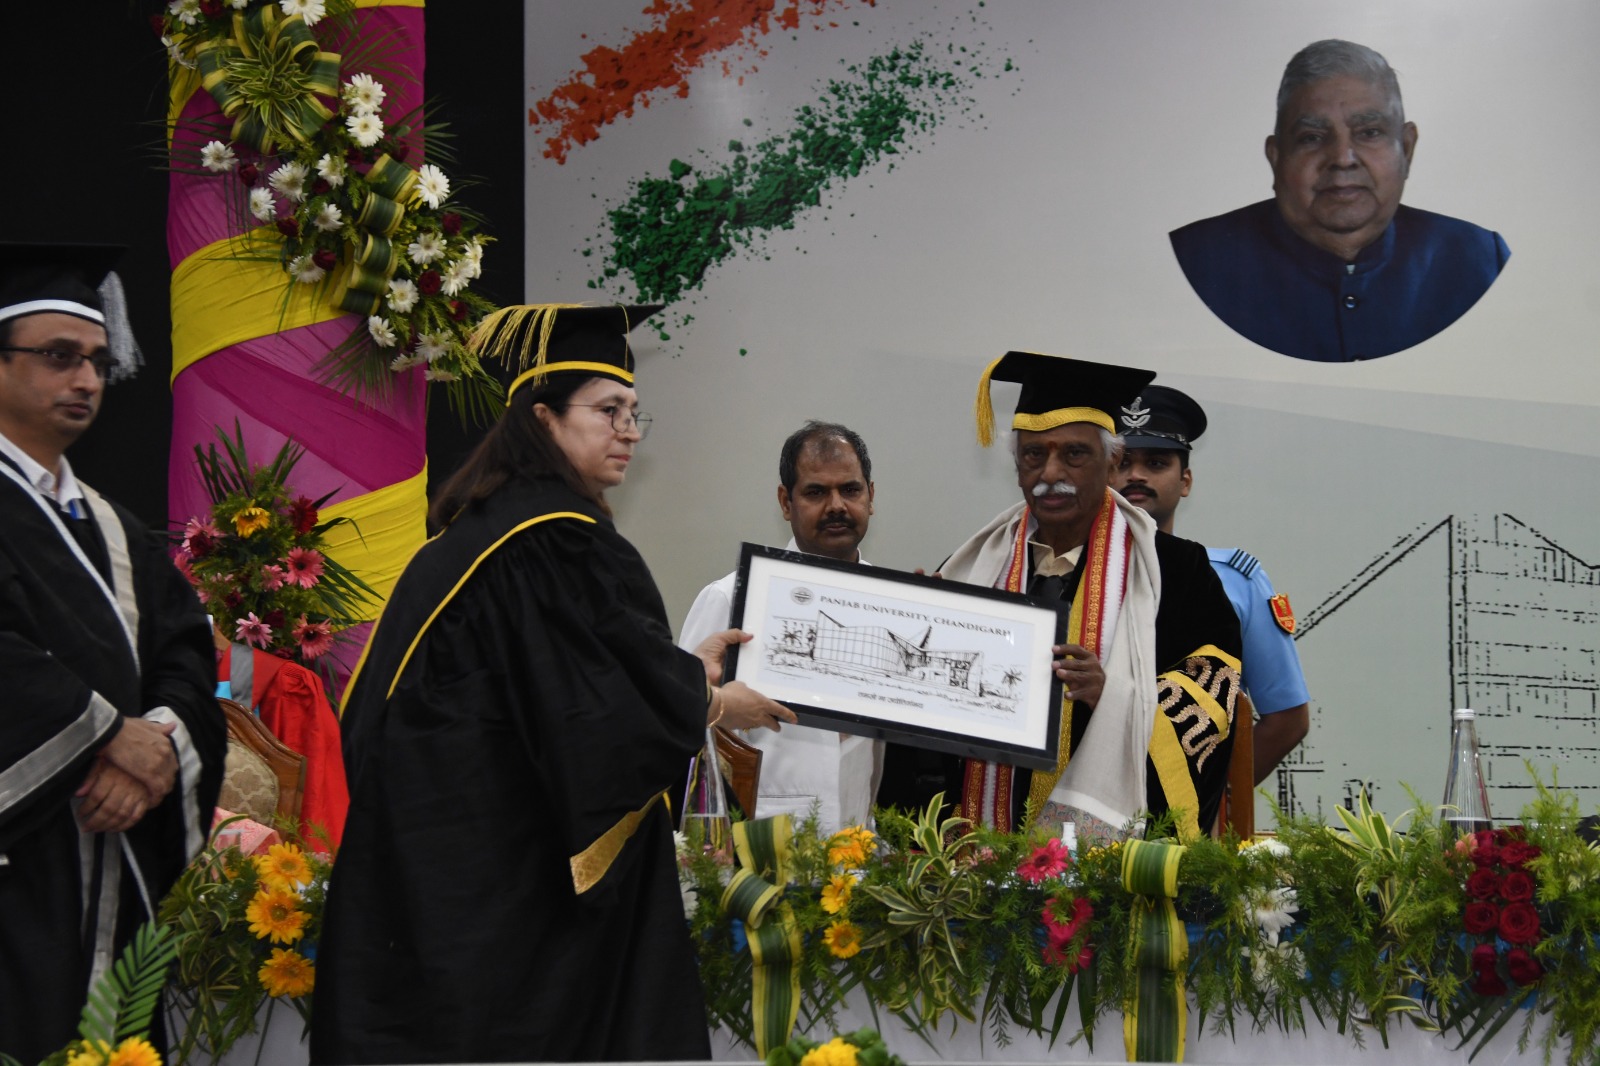 पंजाब विश्वविद्यालय, चण्डीगढ़ की कुलपति श्रीमति रेणु विज पंजाब विश्वविद्यालय के 70वें दीक्षांत समारोह में भारत के उप-राष्ट्रपति एवं पंजाब विश्वविद्यालय के कुलाधिपति श्री जगदीप धनखड की गरिमामय उपस्थिति में हरियाणा के राज्यपाल श्री बंडारू दत्तात्रेय को स्मृति चिन्ह भेंट कर उनका स्वागत करते हुए